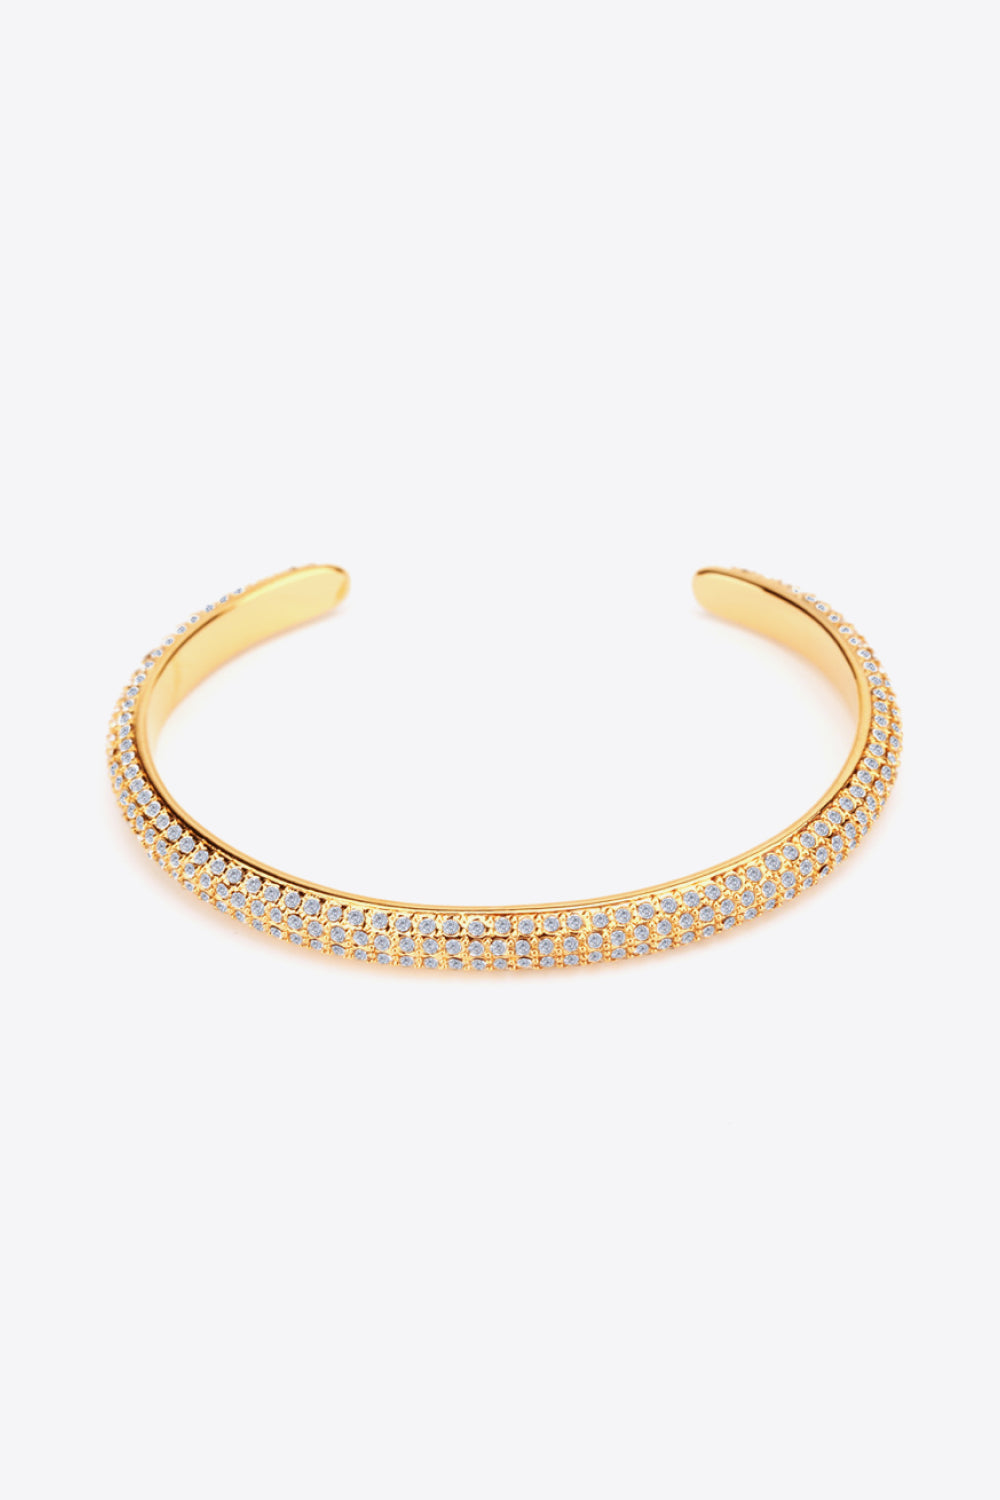 18K Gold-Plated Rhinestone Open Bracelet - Gold / One Size - Women’s Jewelry - Bracelets - 1 - 2024